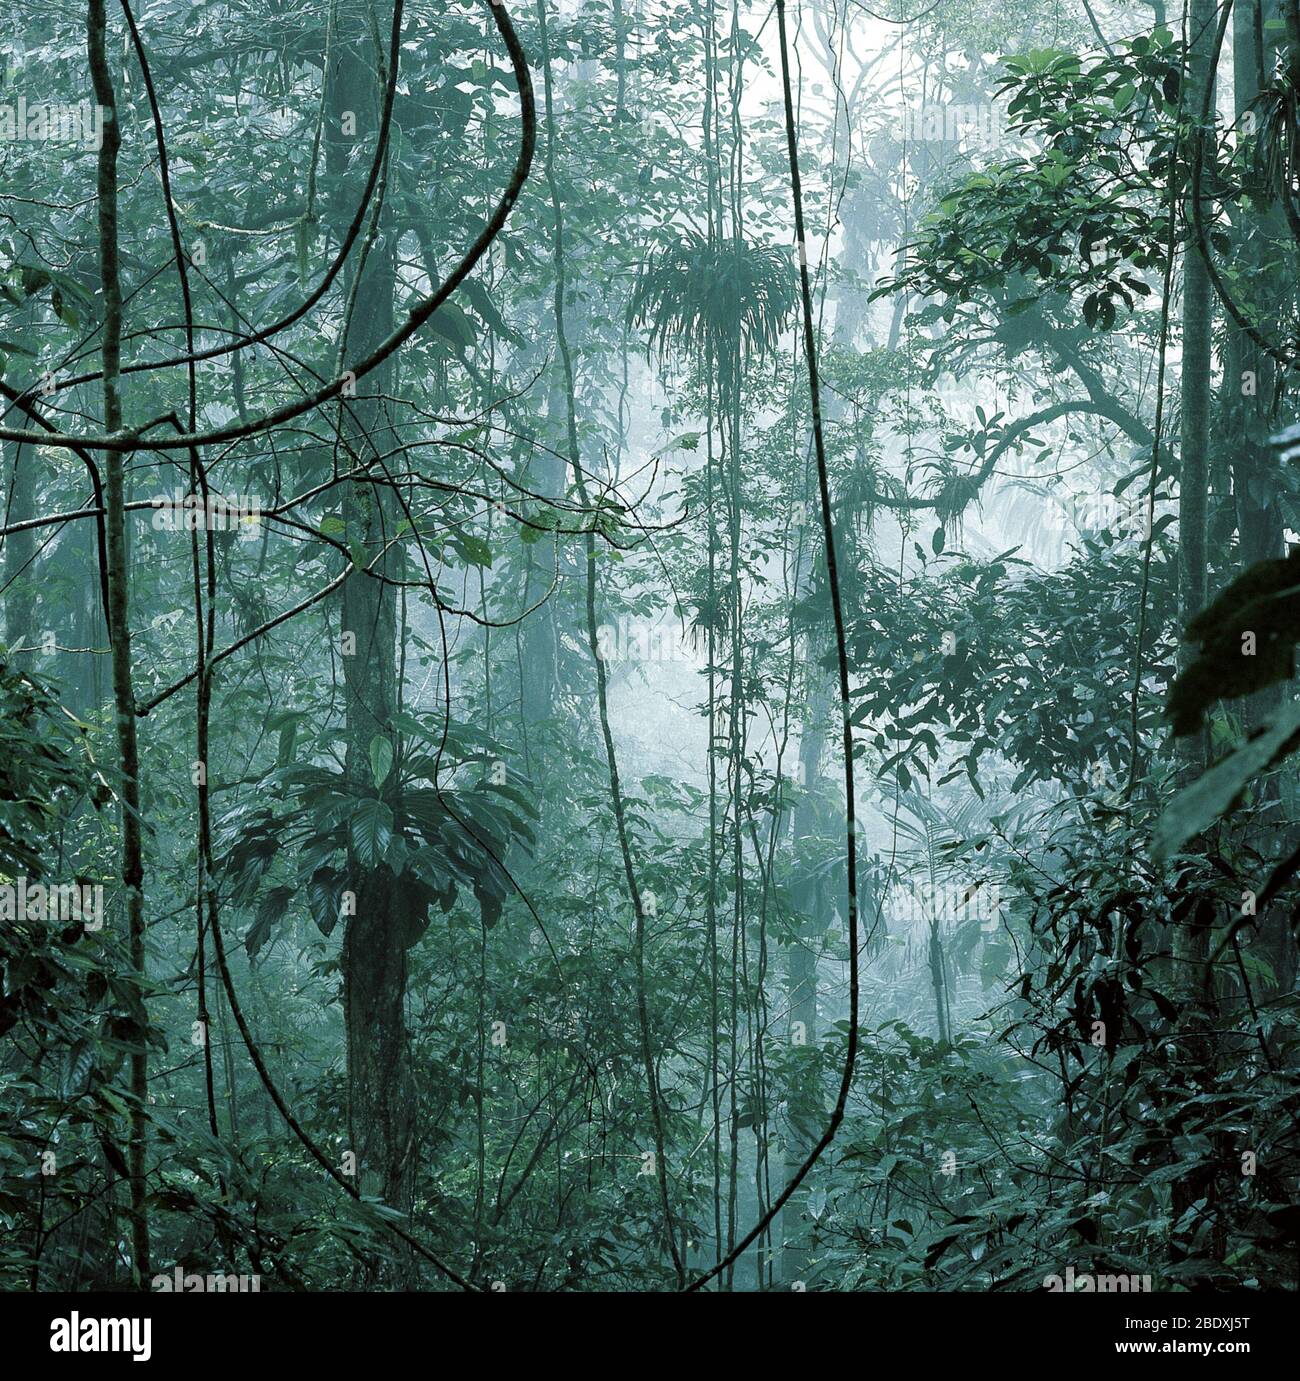 Venezuela Rainforest Stock Photo